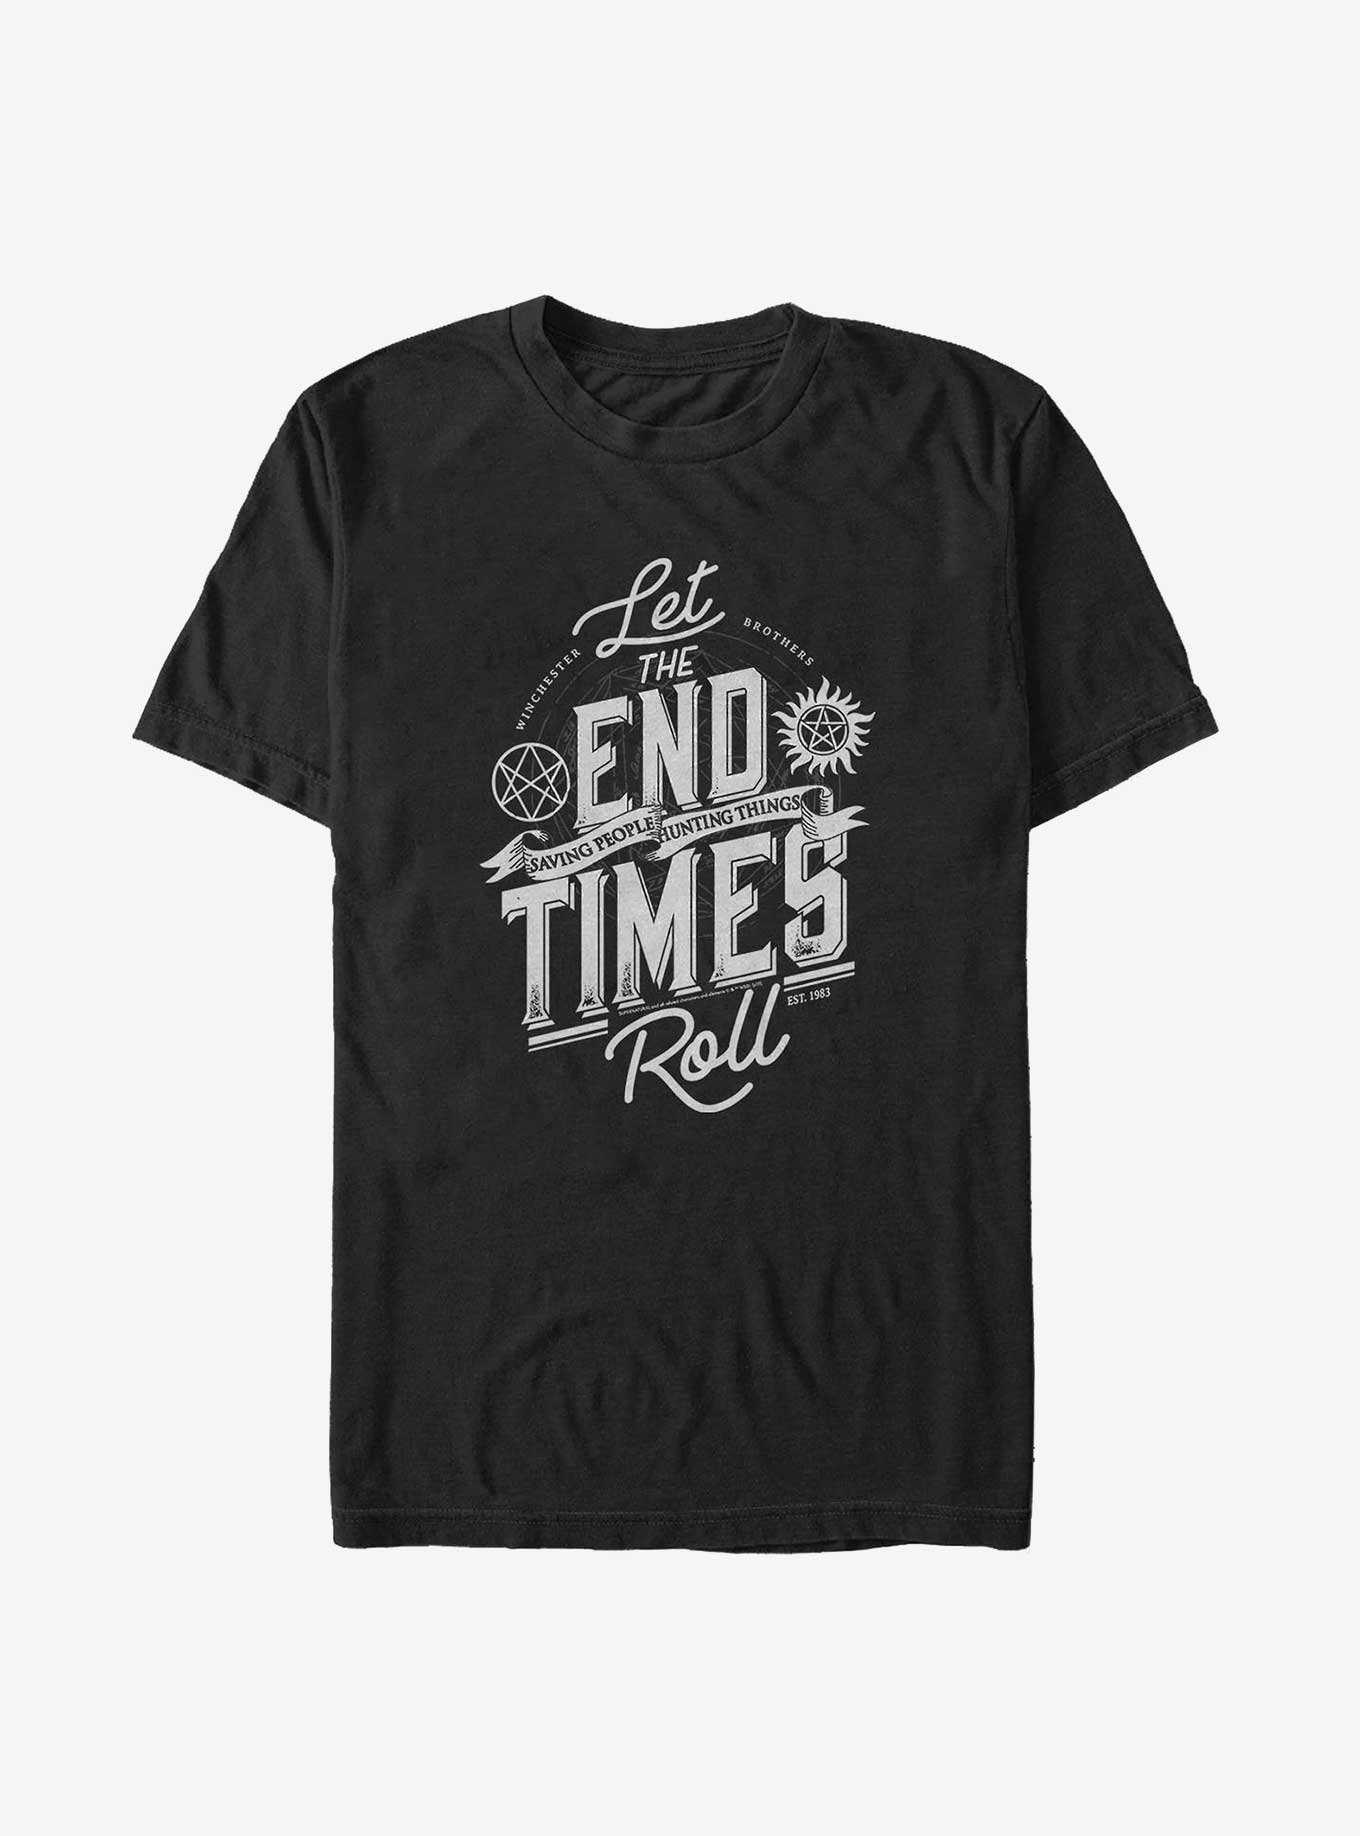 Supernatural End Times Big & Tall T-Shirt, , hi-res